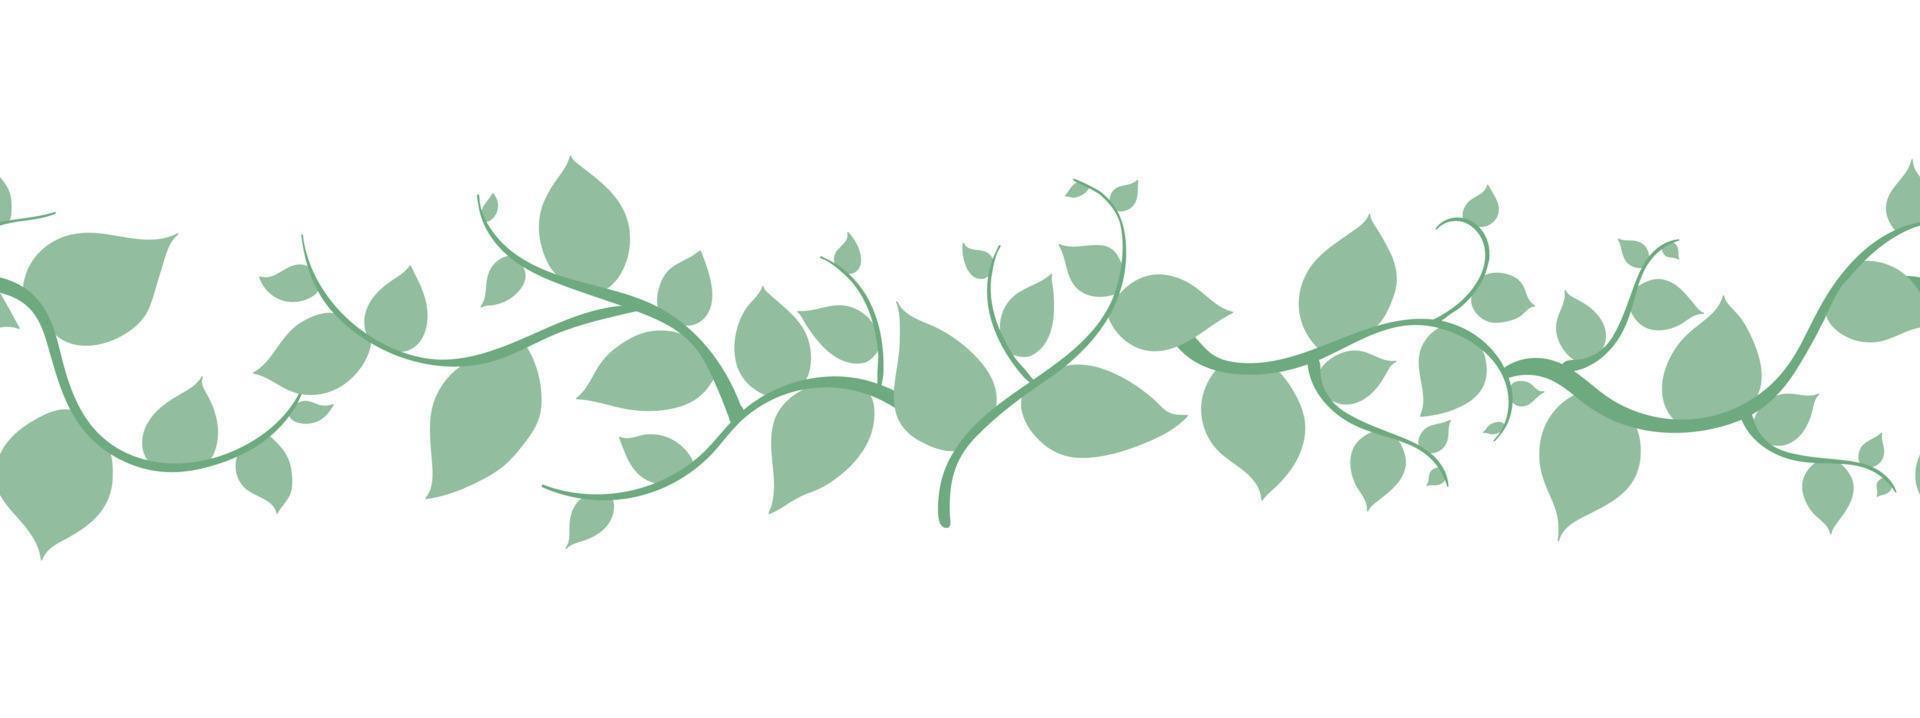 brosse verte transparente, bordure avec conception de branches leafes. illustration dessinée à la main à l'aquarelle. pour les invitations de mariage, cartes de voeux. nature, éléments organiques.vector vecteur